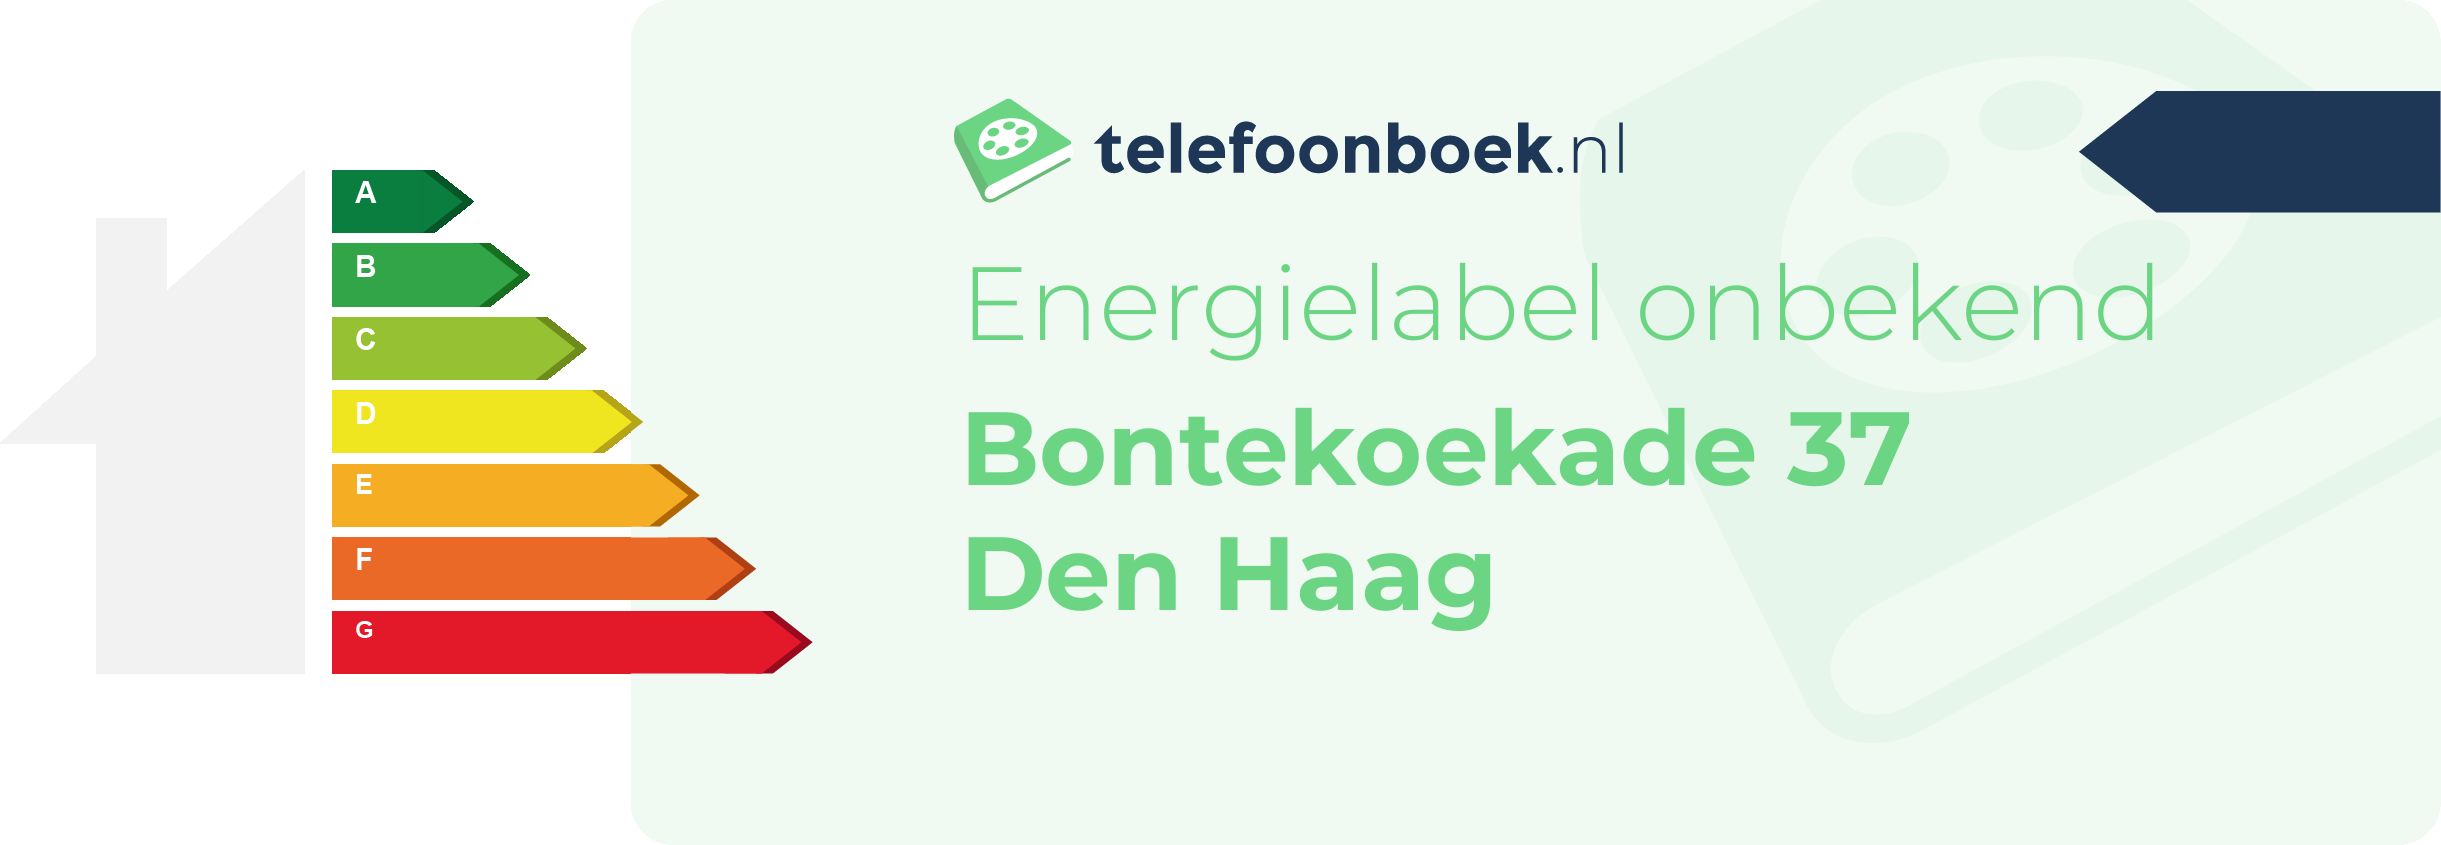 Energielabel Bontekoekade 37 Den Haag